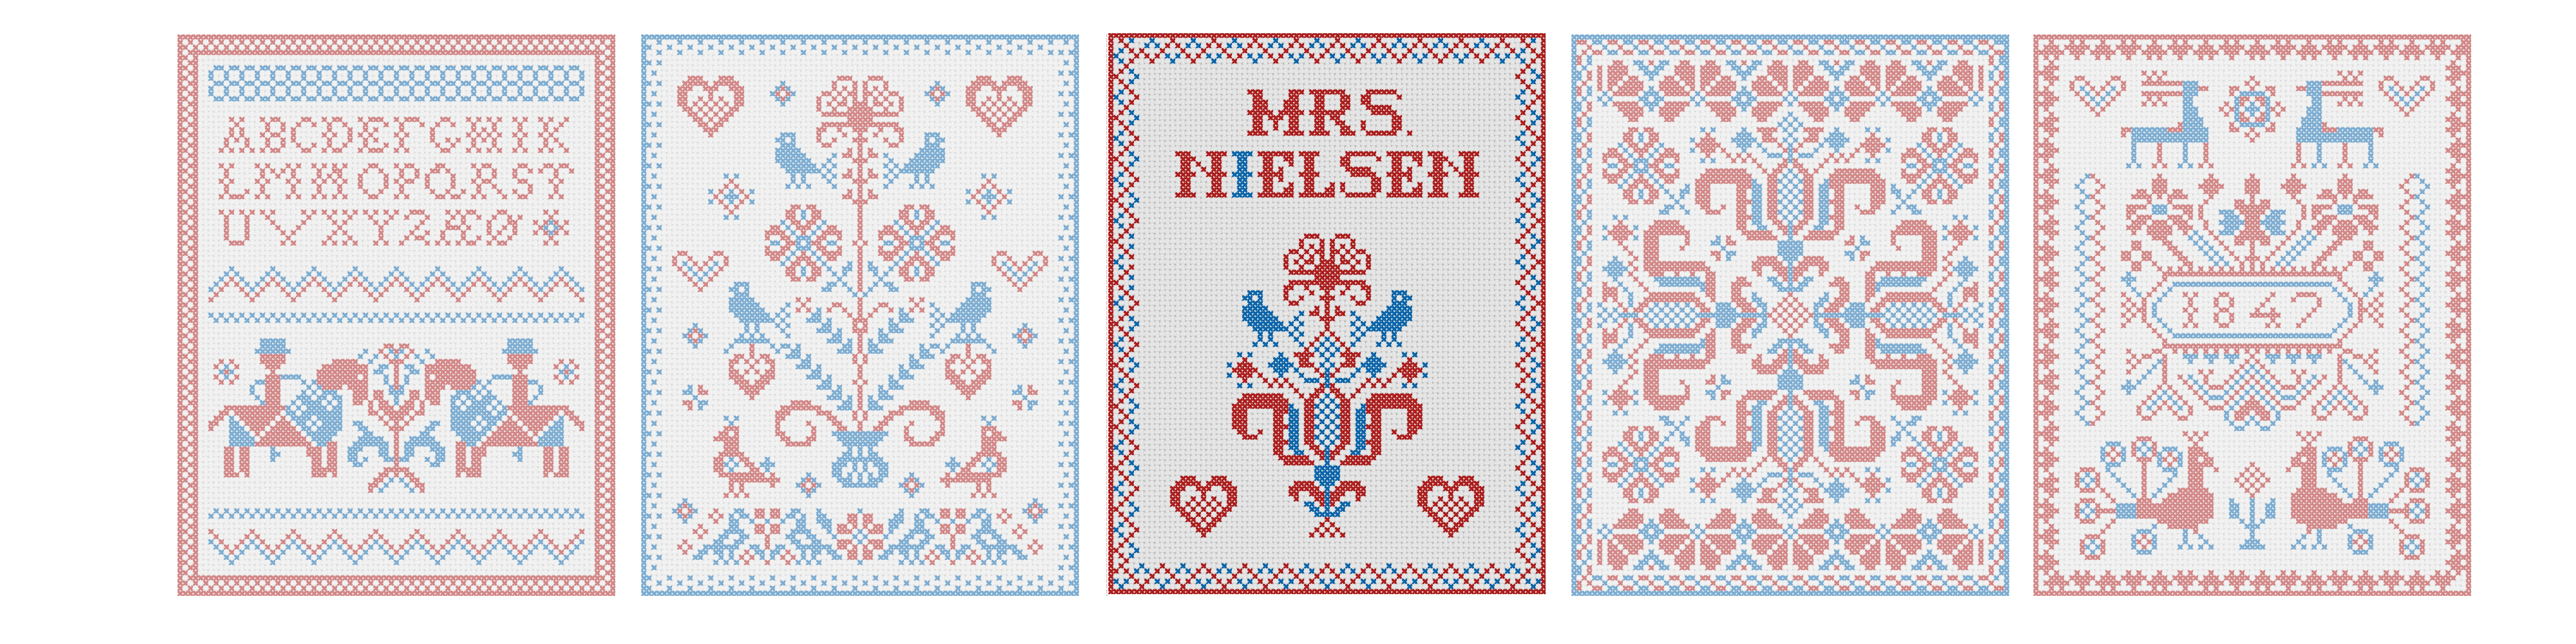 Scandinavian Embroidery Patterns Free Mrs Nielsen Embroidery Scandinavian Cross Stitch Embroidery Patterns